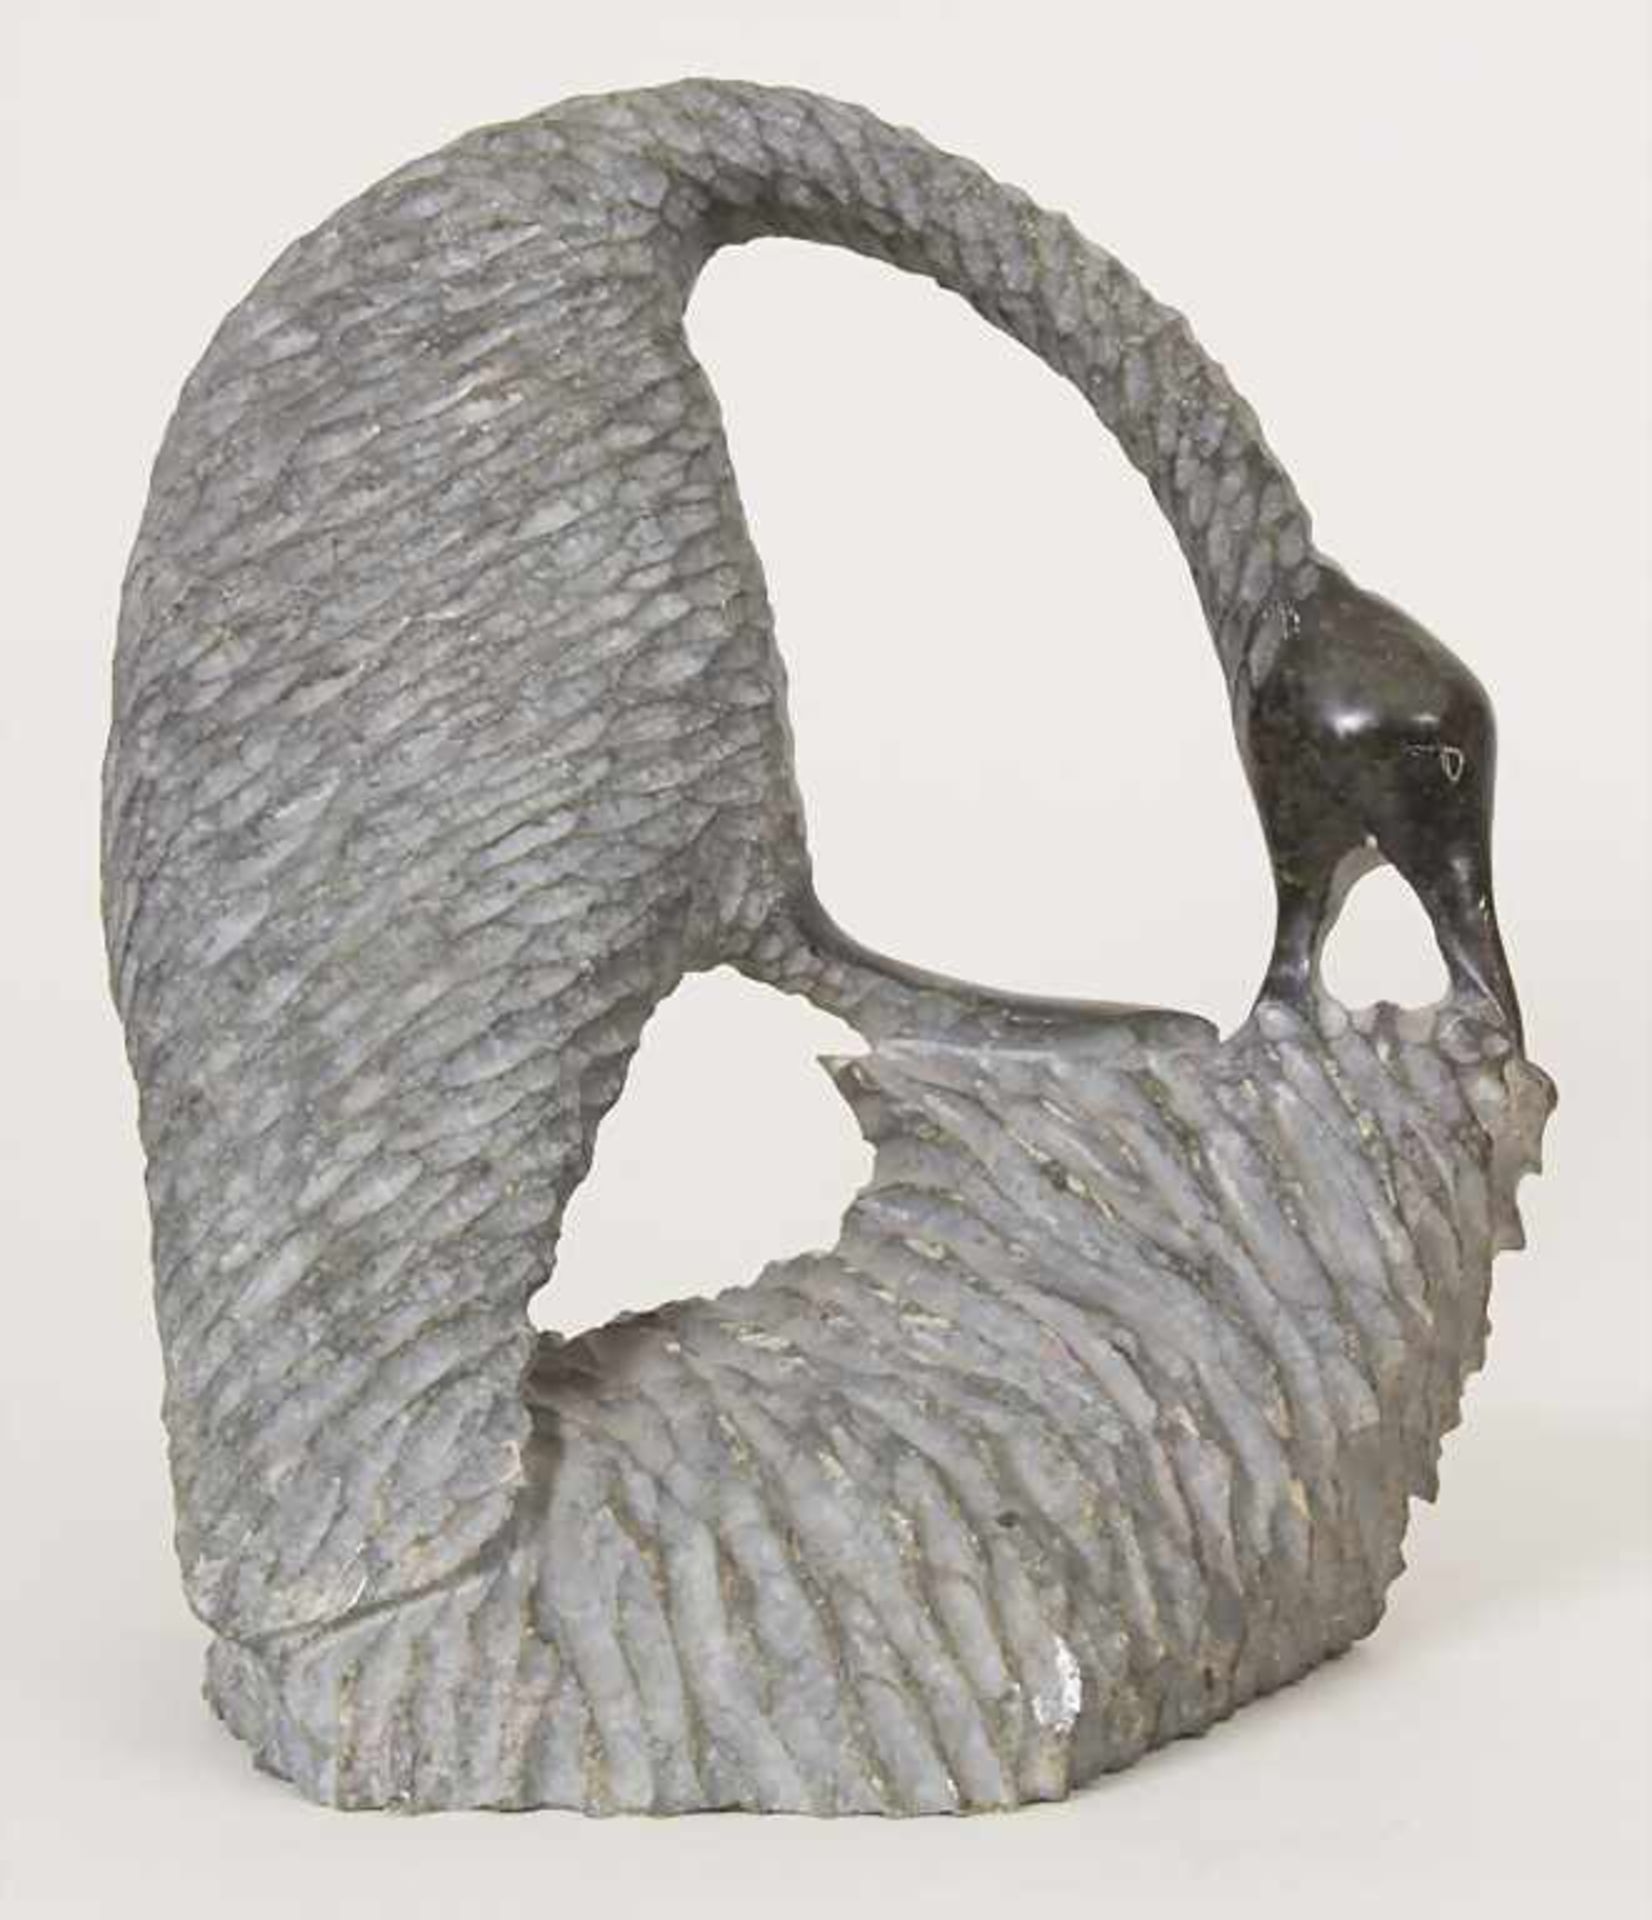 Tierfigur 'Wasservogel' / An animal figure 'Water bird', wohl Afrika, 20. Jh.Material: Speckstein, - Bild 3 aus 5